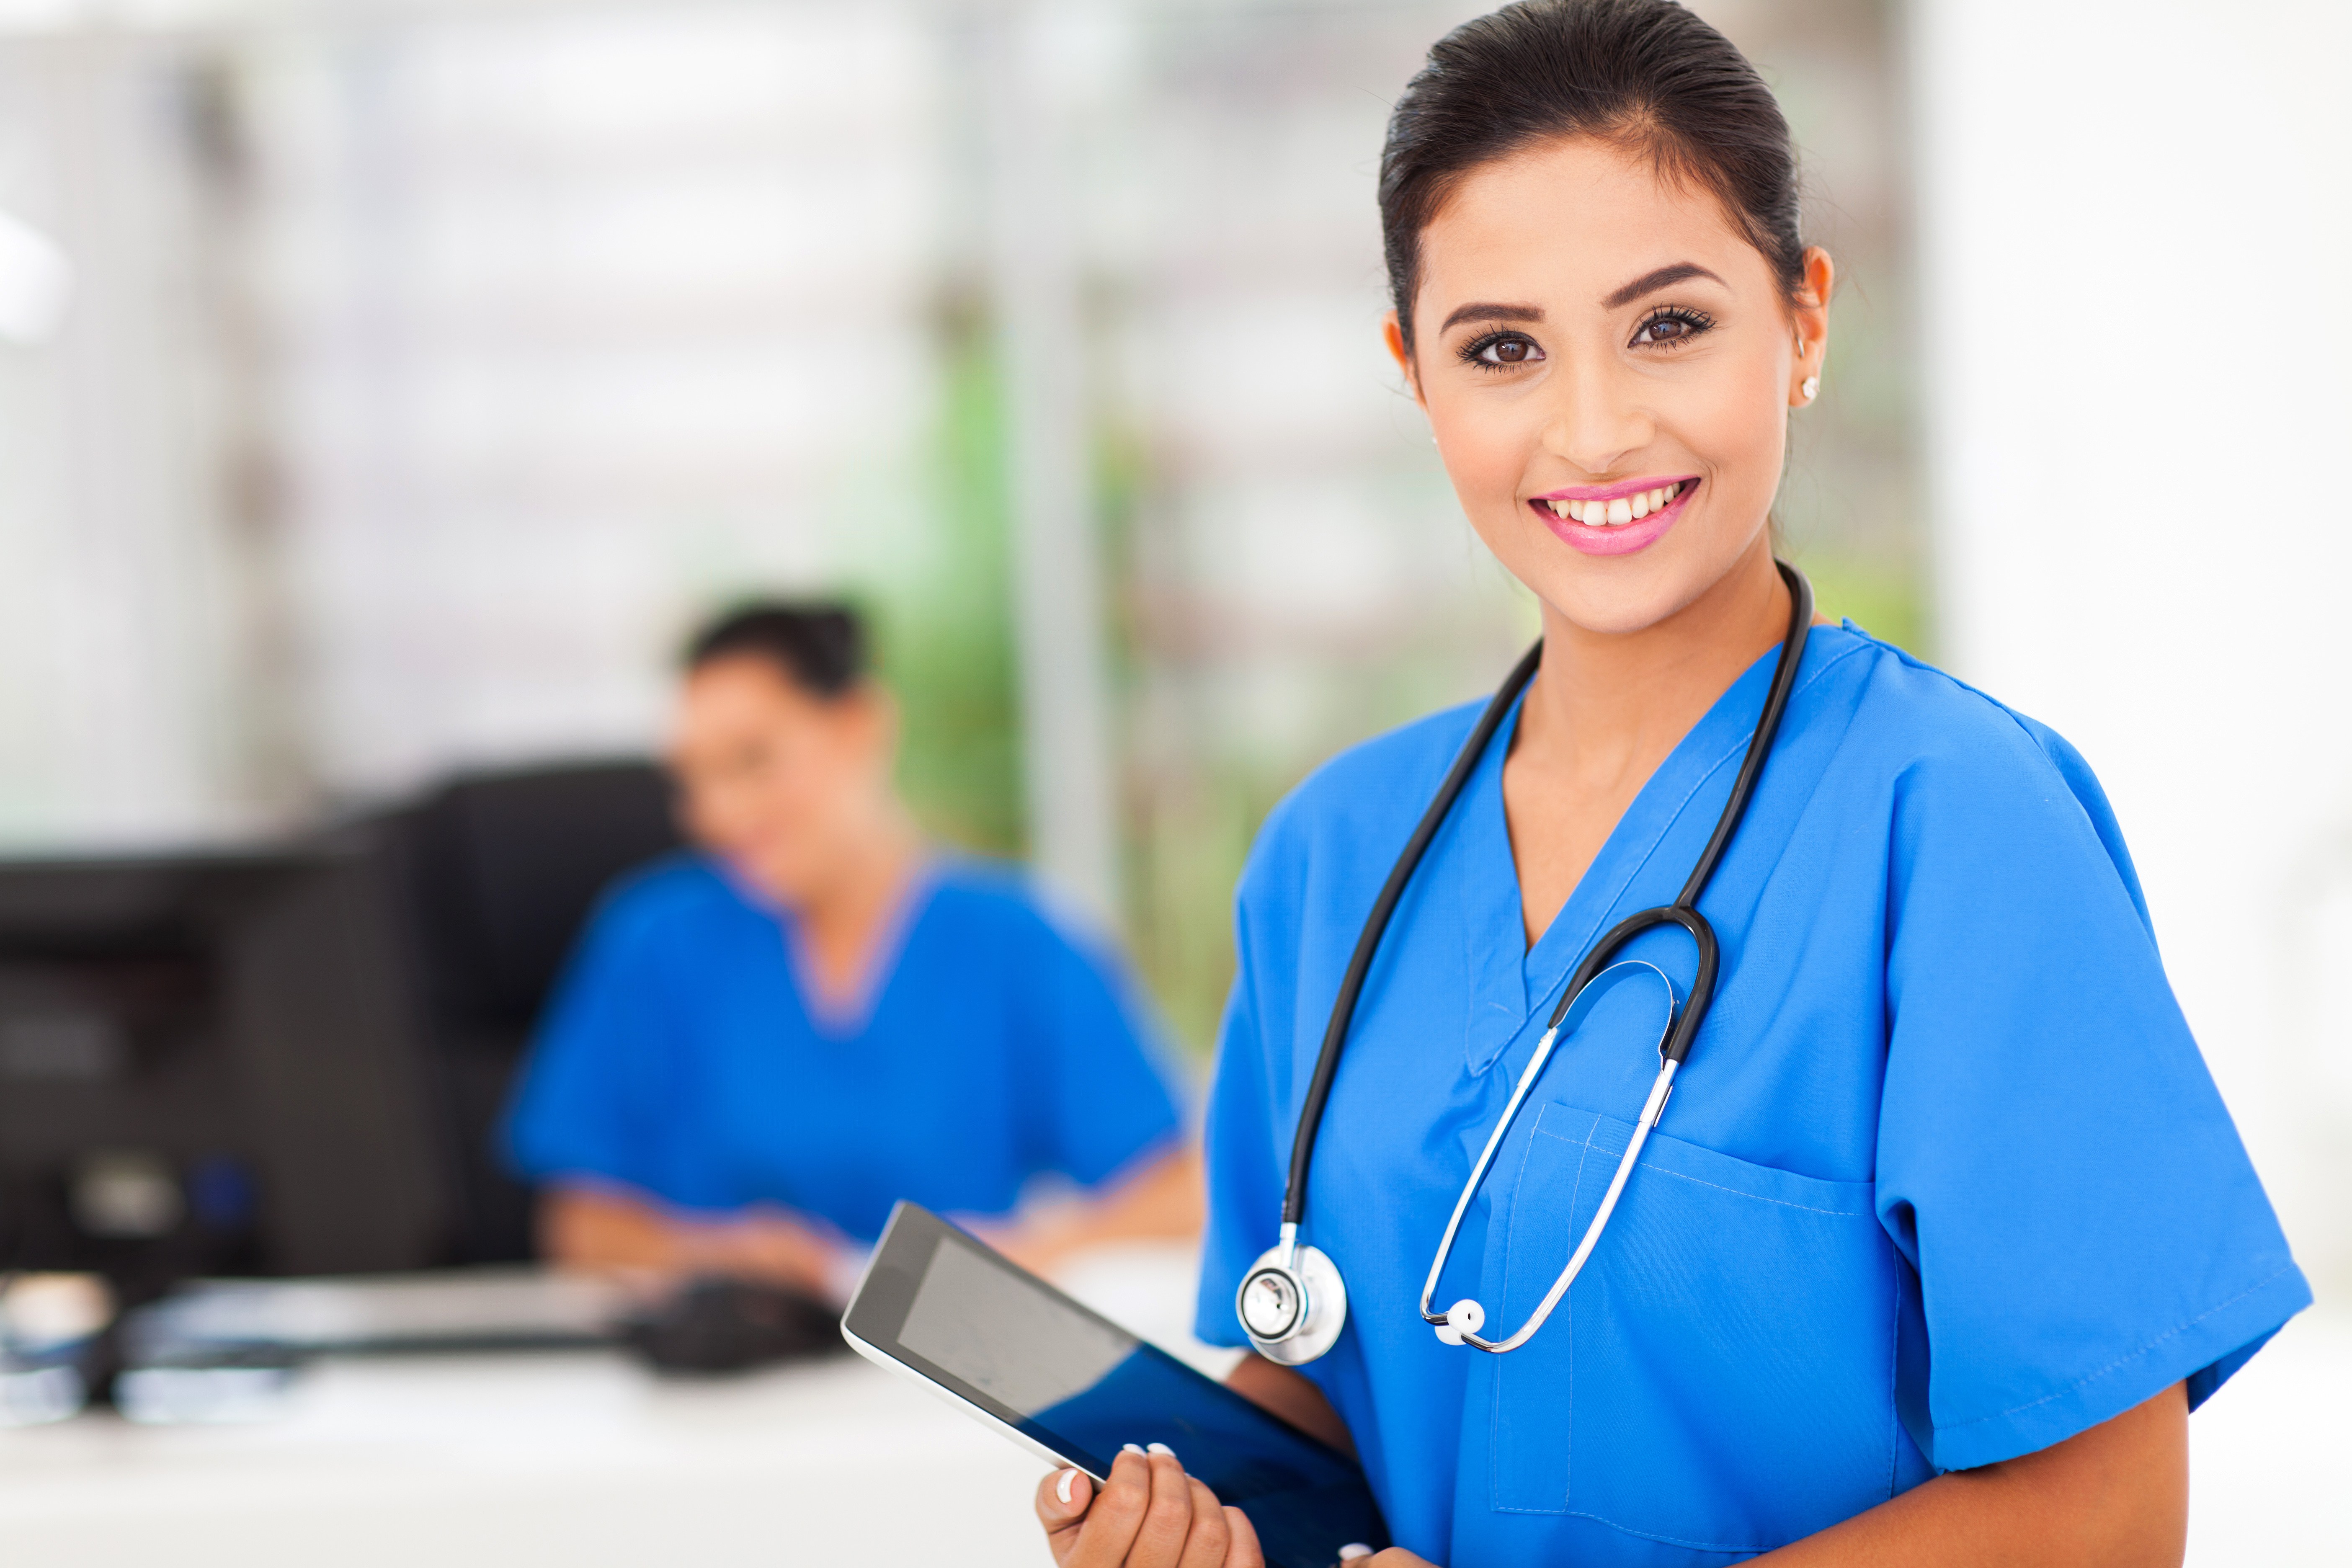 Empleado farmacéutico Vista 5 razones para estudiar Auxiliar de Enfermería | IFP